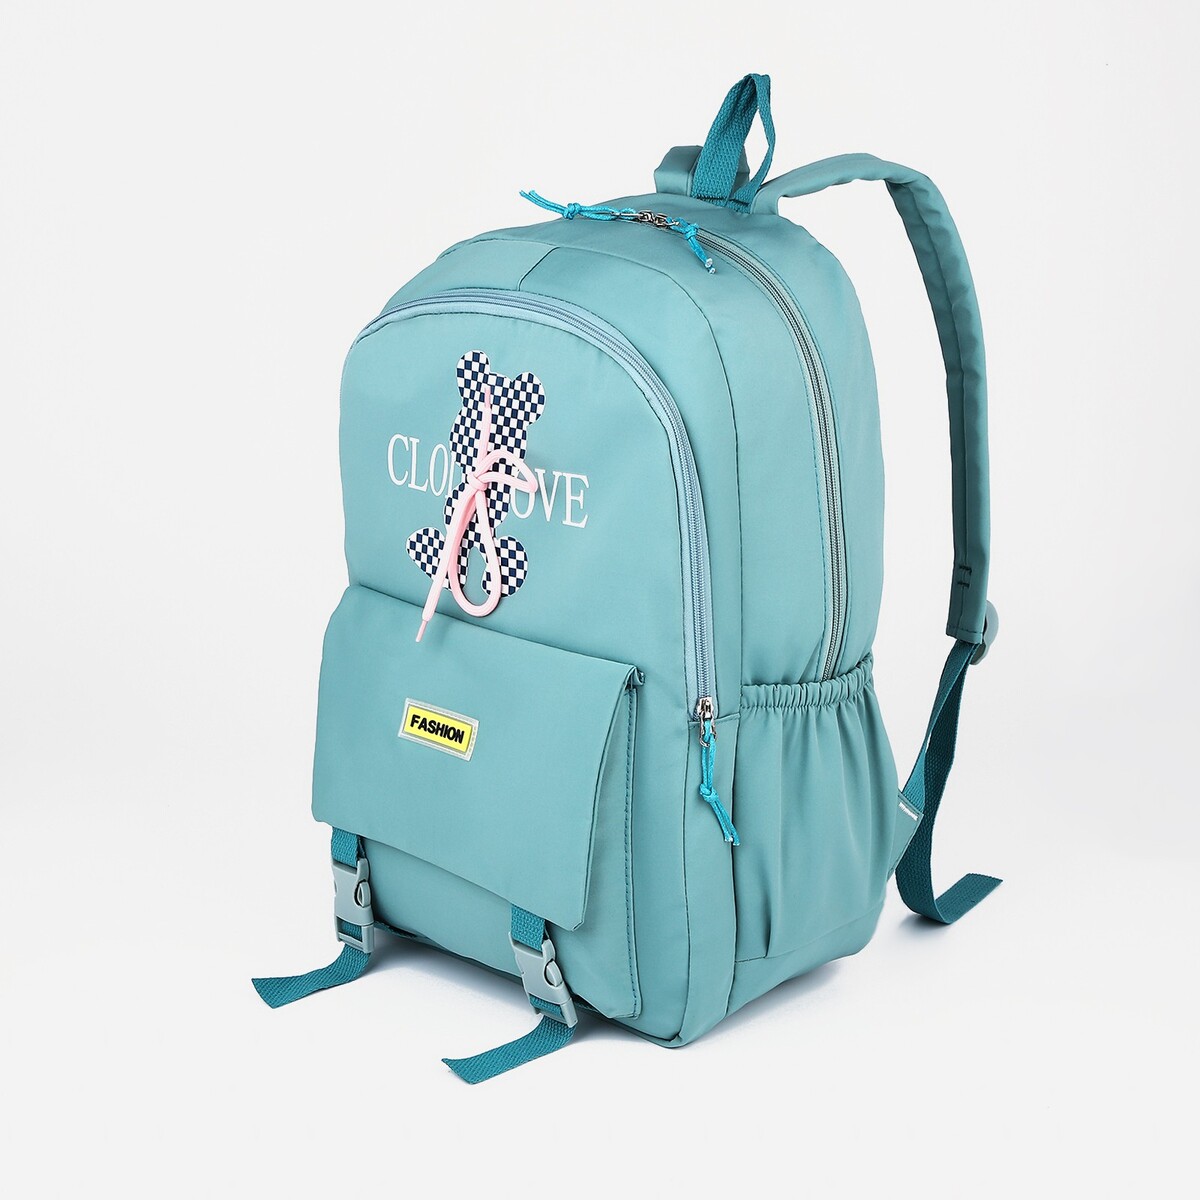 Рюкзак школьный из текстиля на молнии, 3 кармана, цвет бирюзовый рюкзак школьный из текстиля на молнии 3 кармана бирюзовый